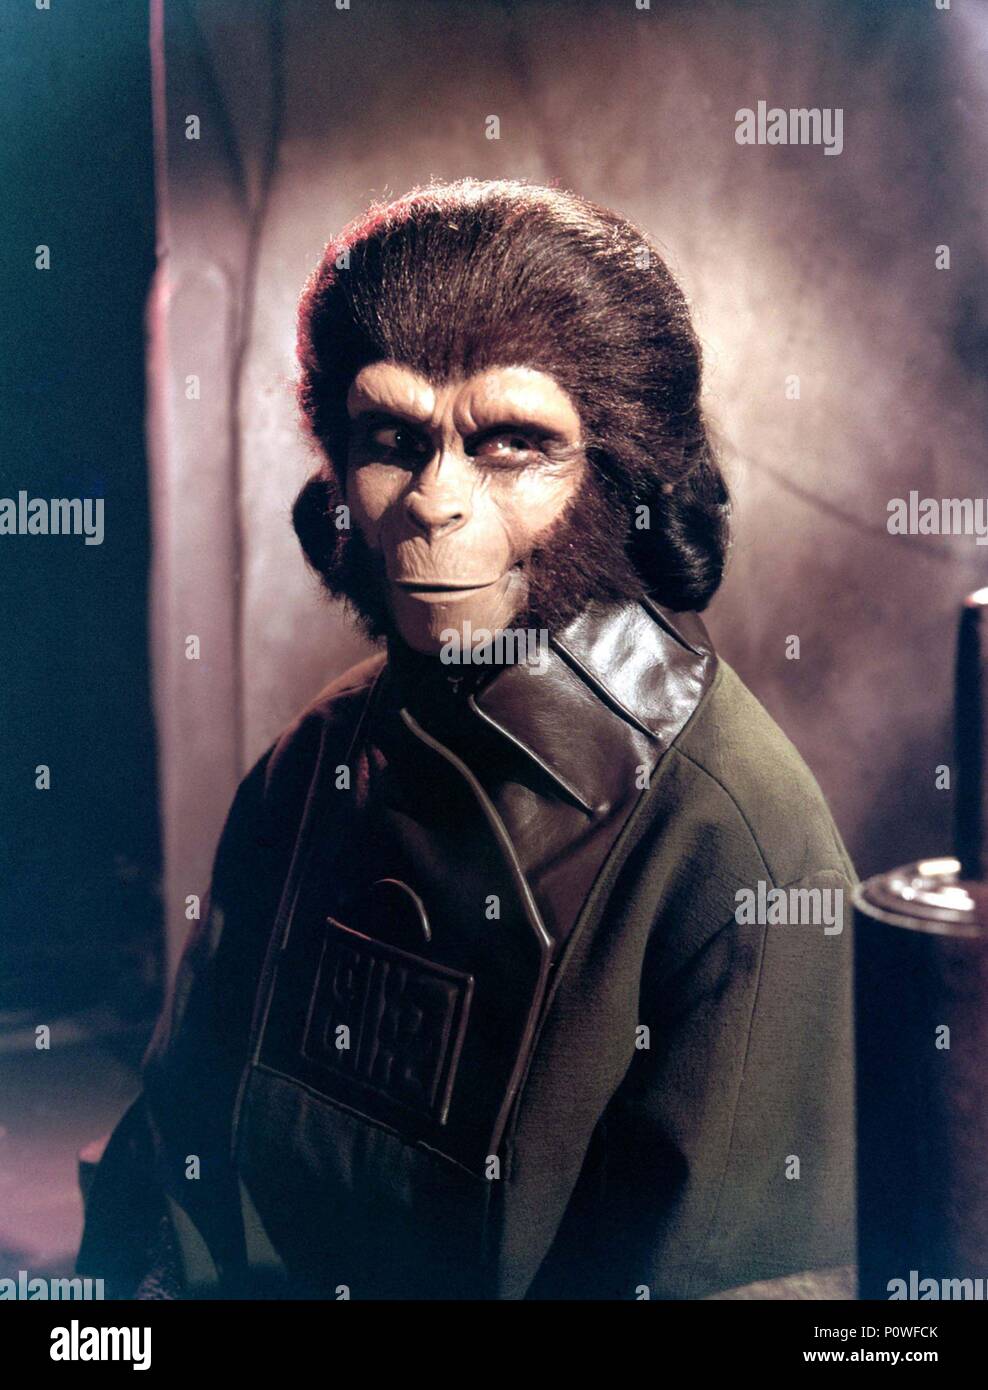 pellicola-originale-titolo-il-pianeta-delle-scimmie-titolo-inglese-il-pianeta-delle-scimmie-regista-franklin-j-schaffner-anno-1968-stelle-kim-hunter-credito-20th-century-fox-album-p0wfck.jpg